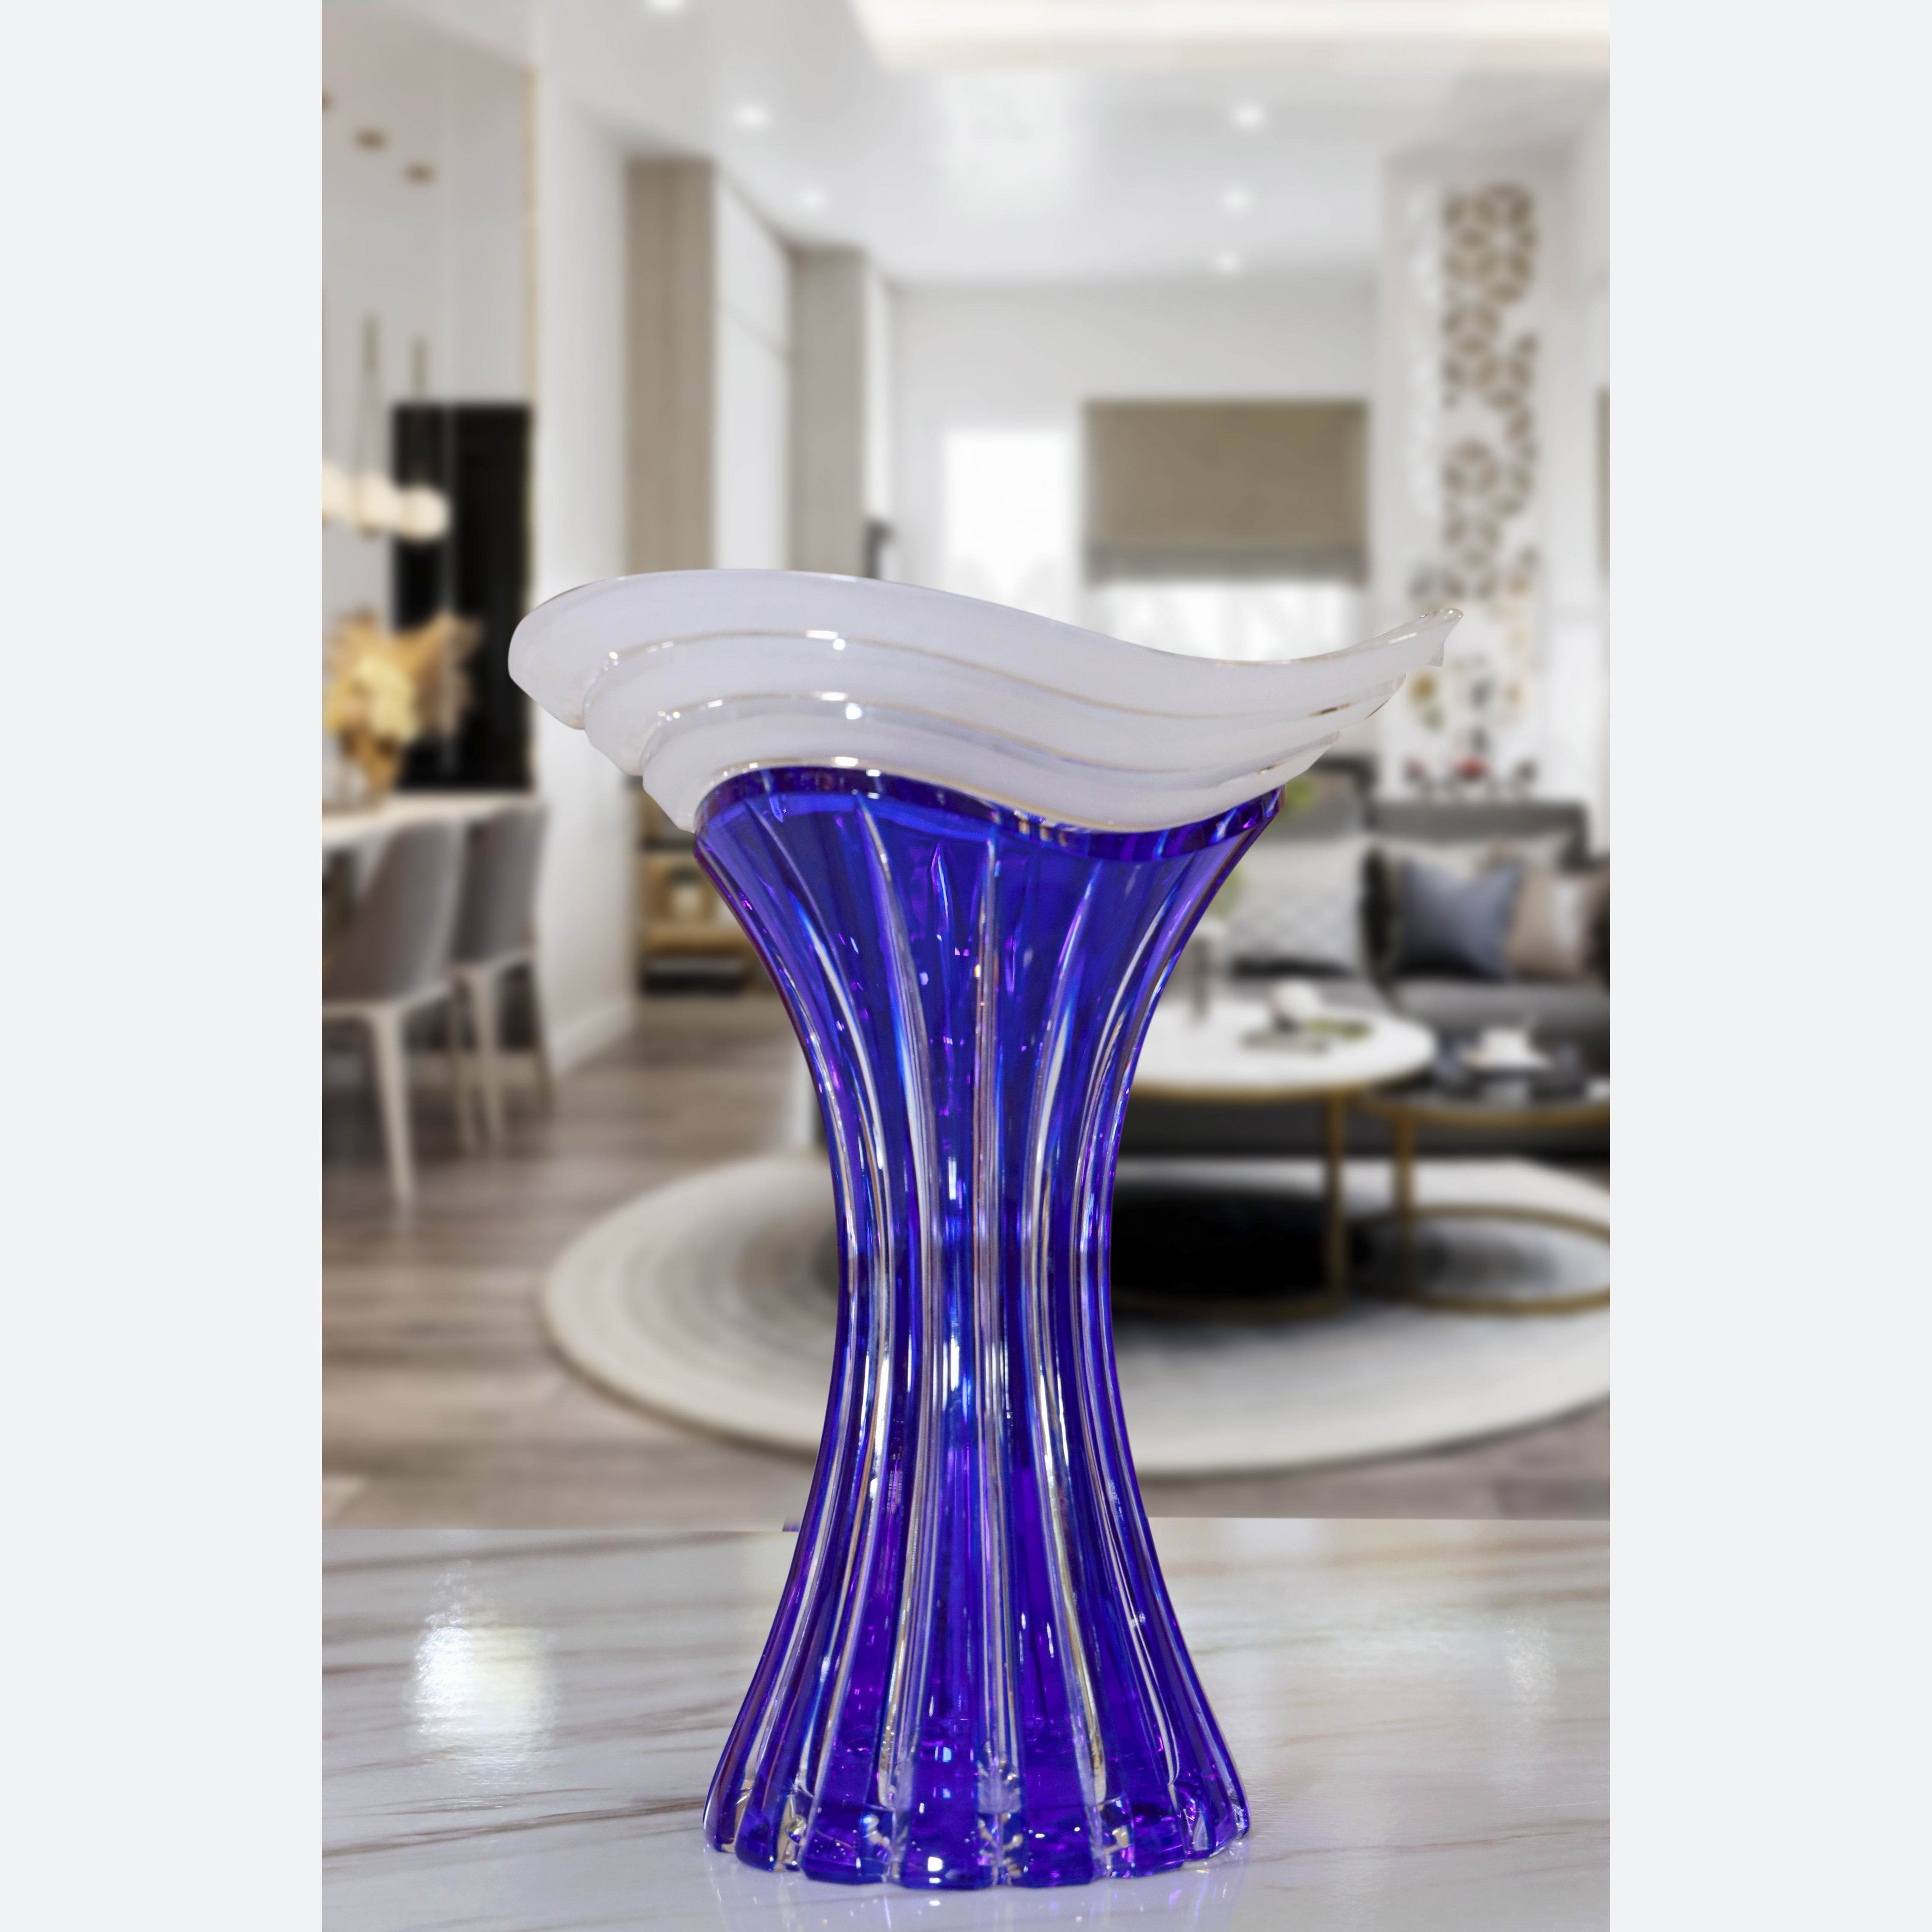 Bình hoa pha lê 2 da BOHEMIA CAESAR CRYSTAL 1366M, màu xanh dương, cao 25 cm, hoa văn mài dọc thân, kiểu dáng miệng loe lượn sóng phun cát mờ - Hàng chính hãng